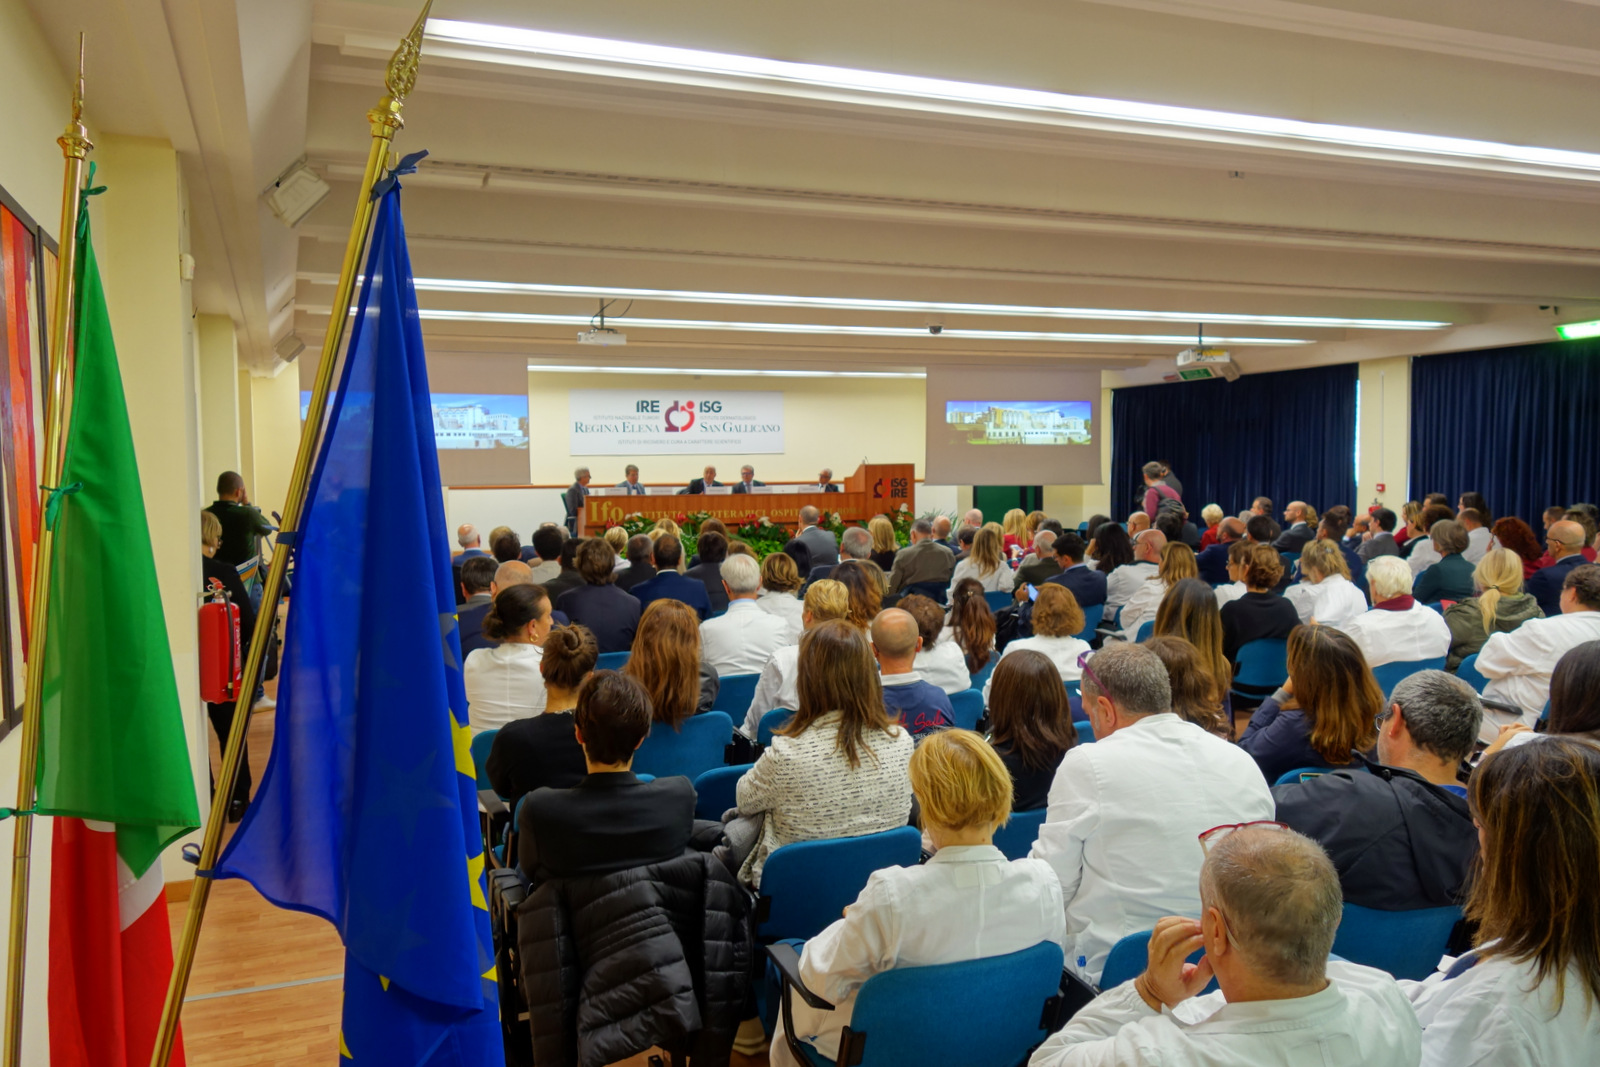 Foto del centro congressi alla presentazione del centro di fase 1 degli IFO